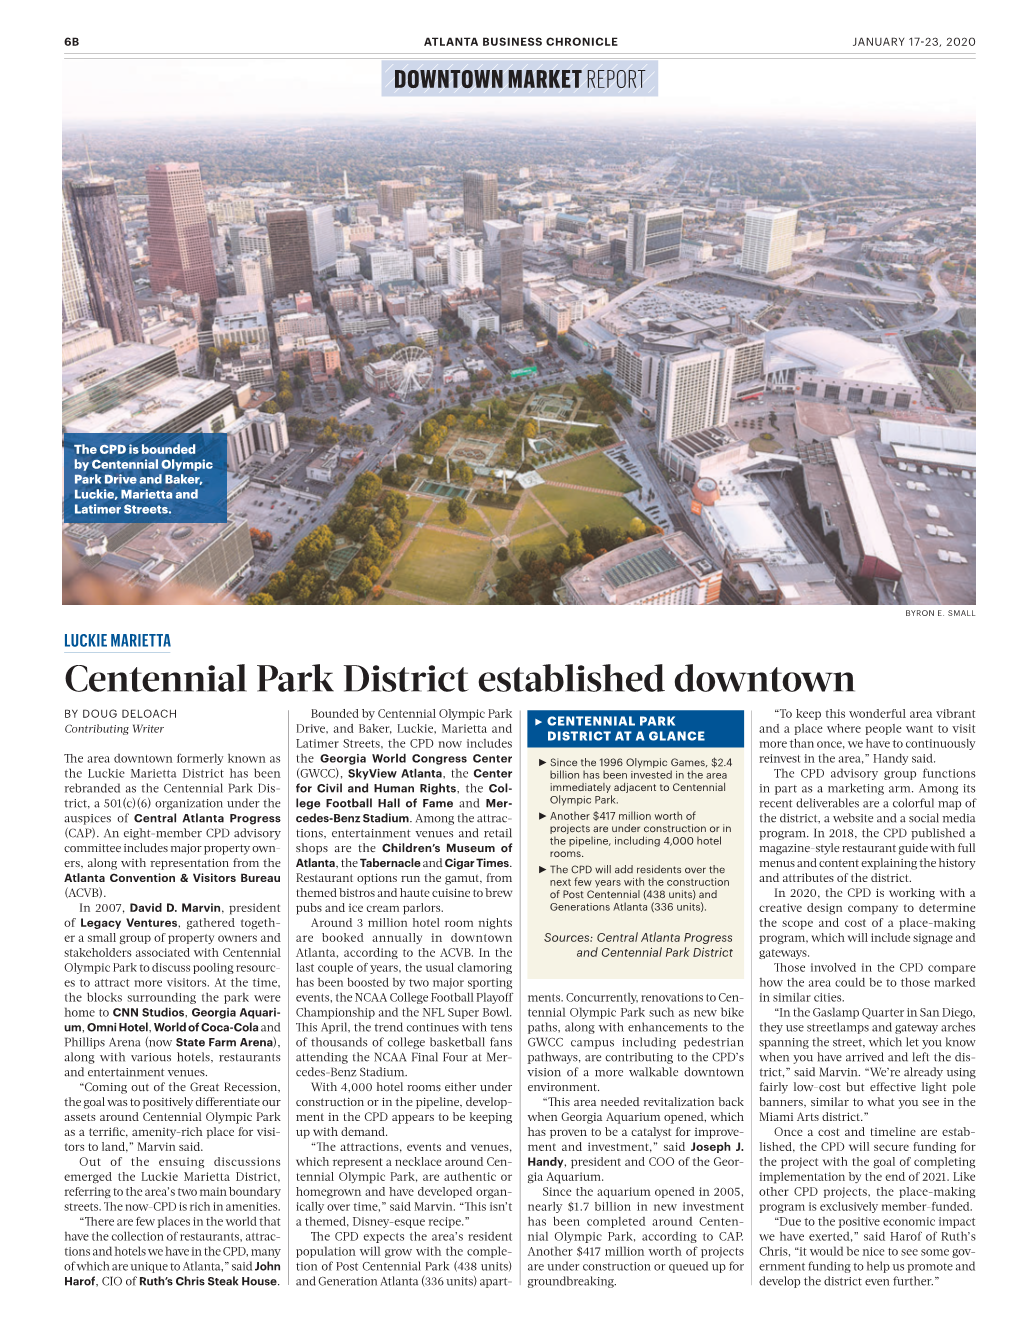 Centennial Park District Established Downtown